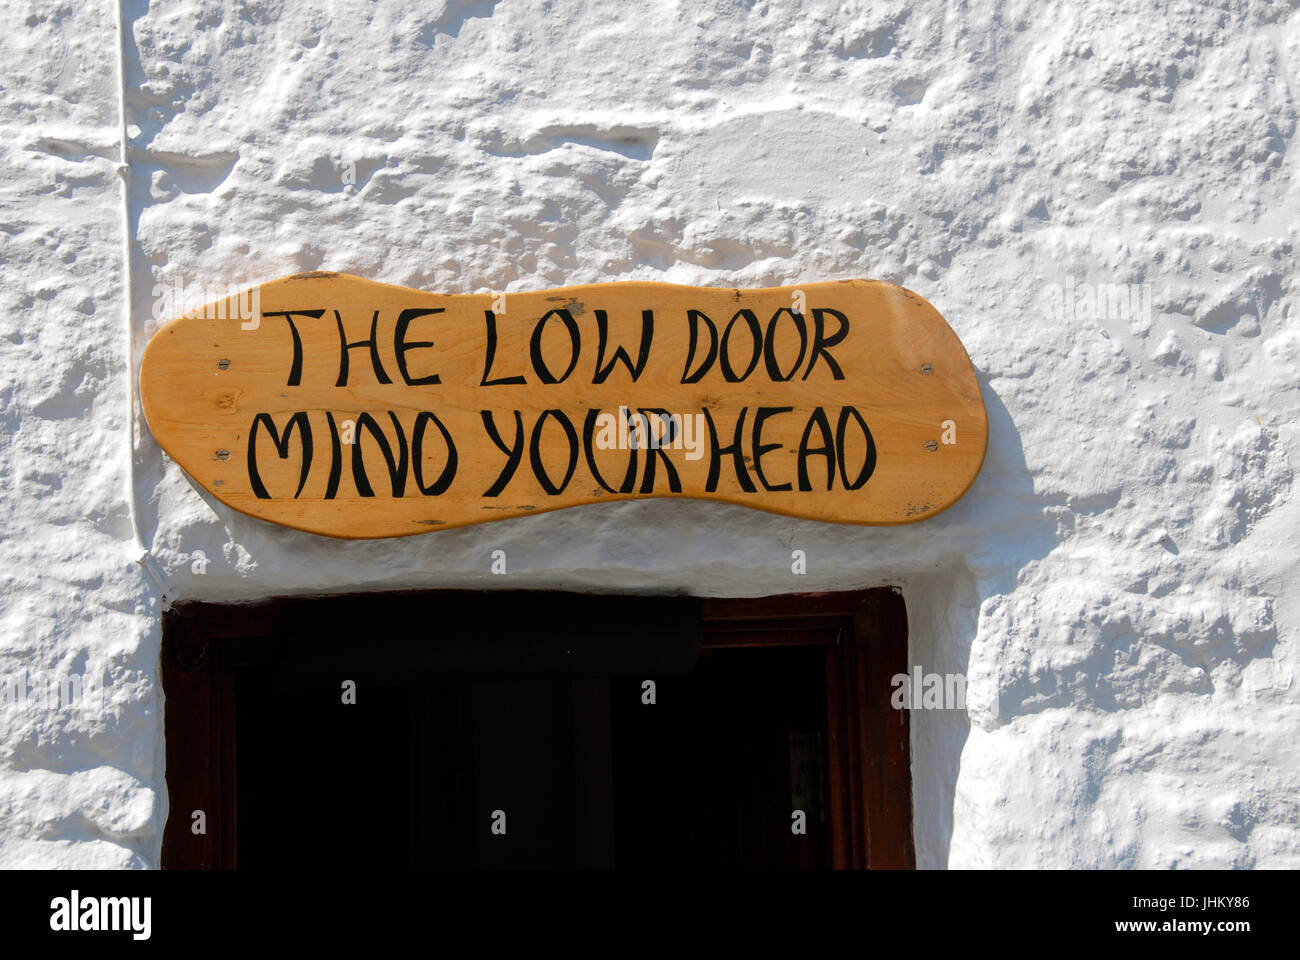 Melden Sie sich über niedrige Tür - Mind Your Head Stockfoto